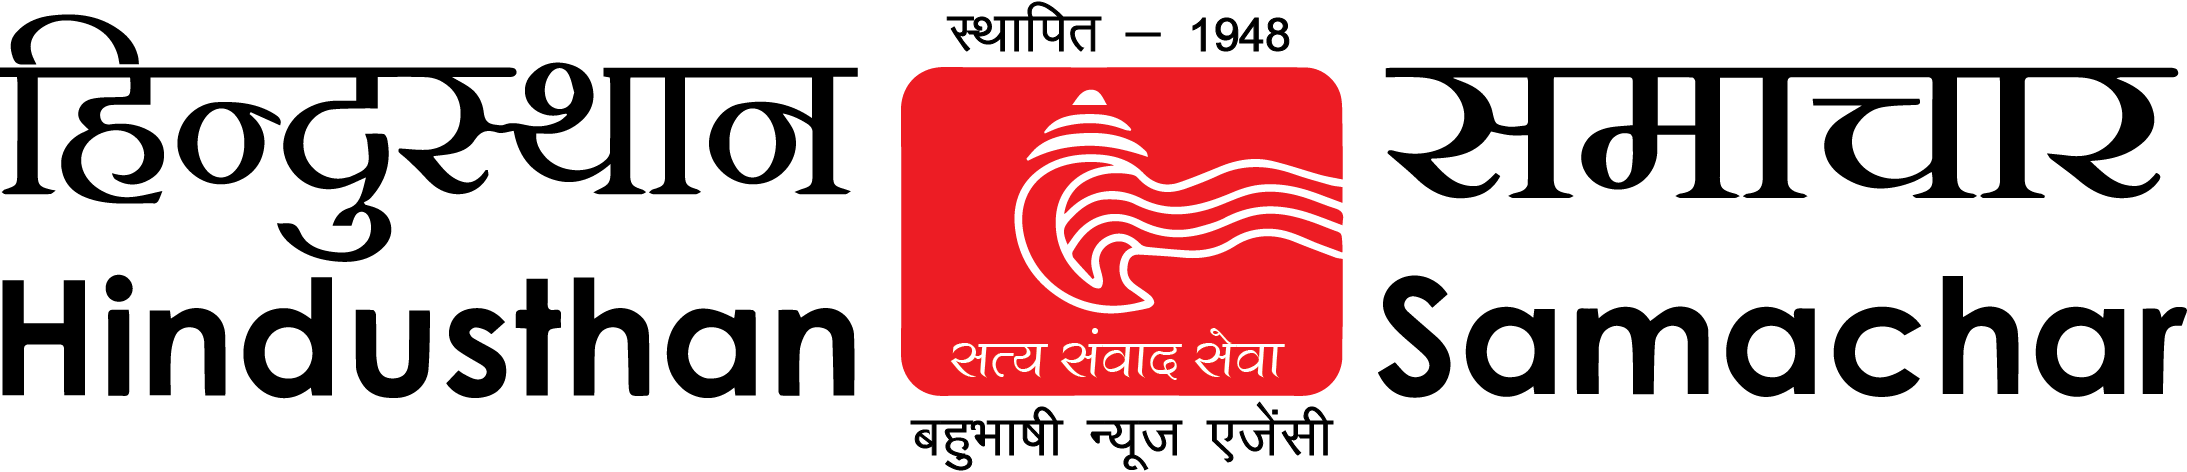 Hindusthan Samachar Nepali